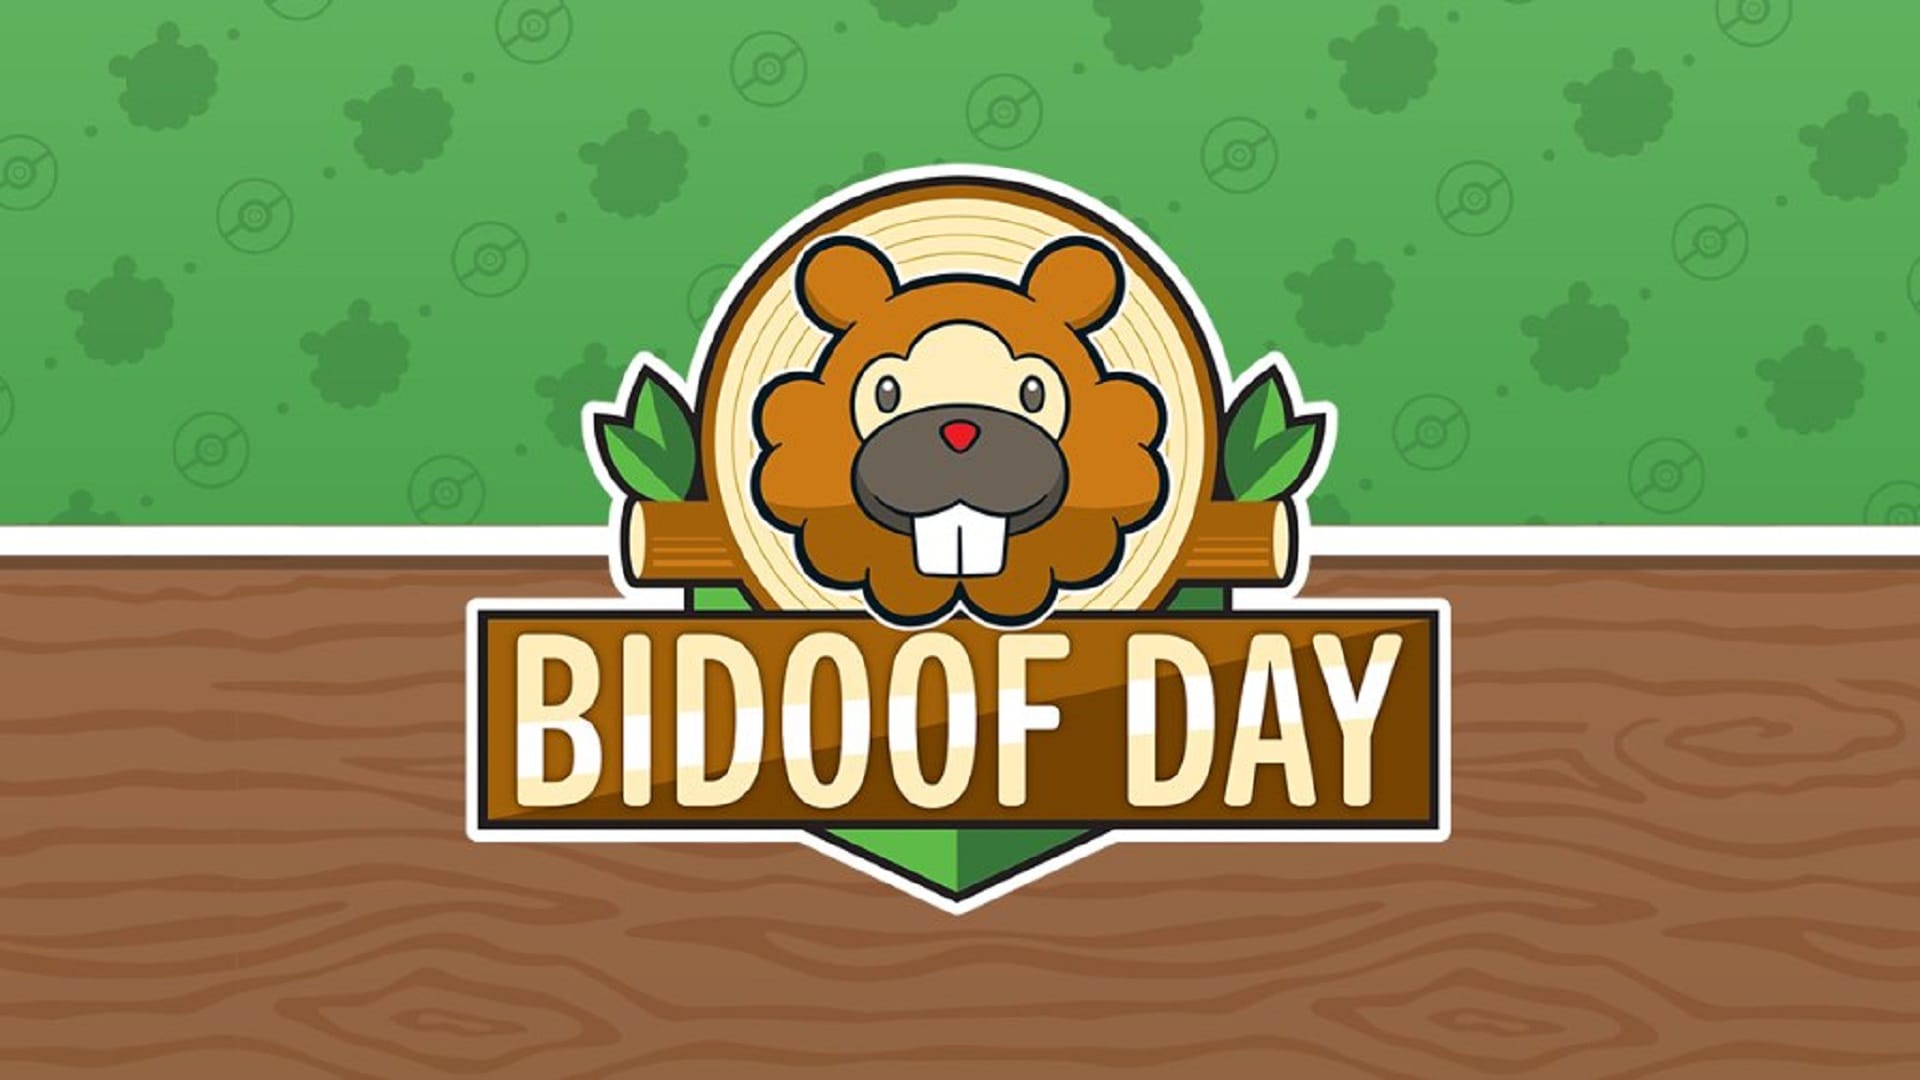 Bidoof Day